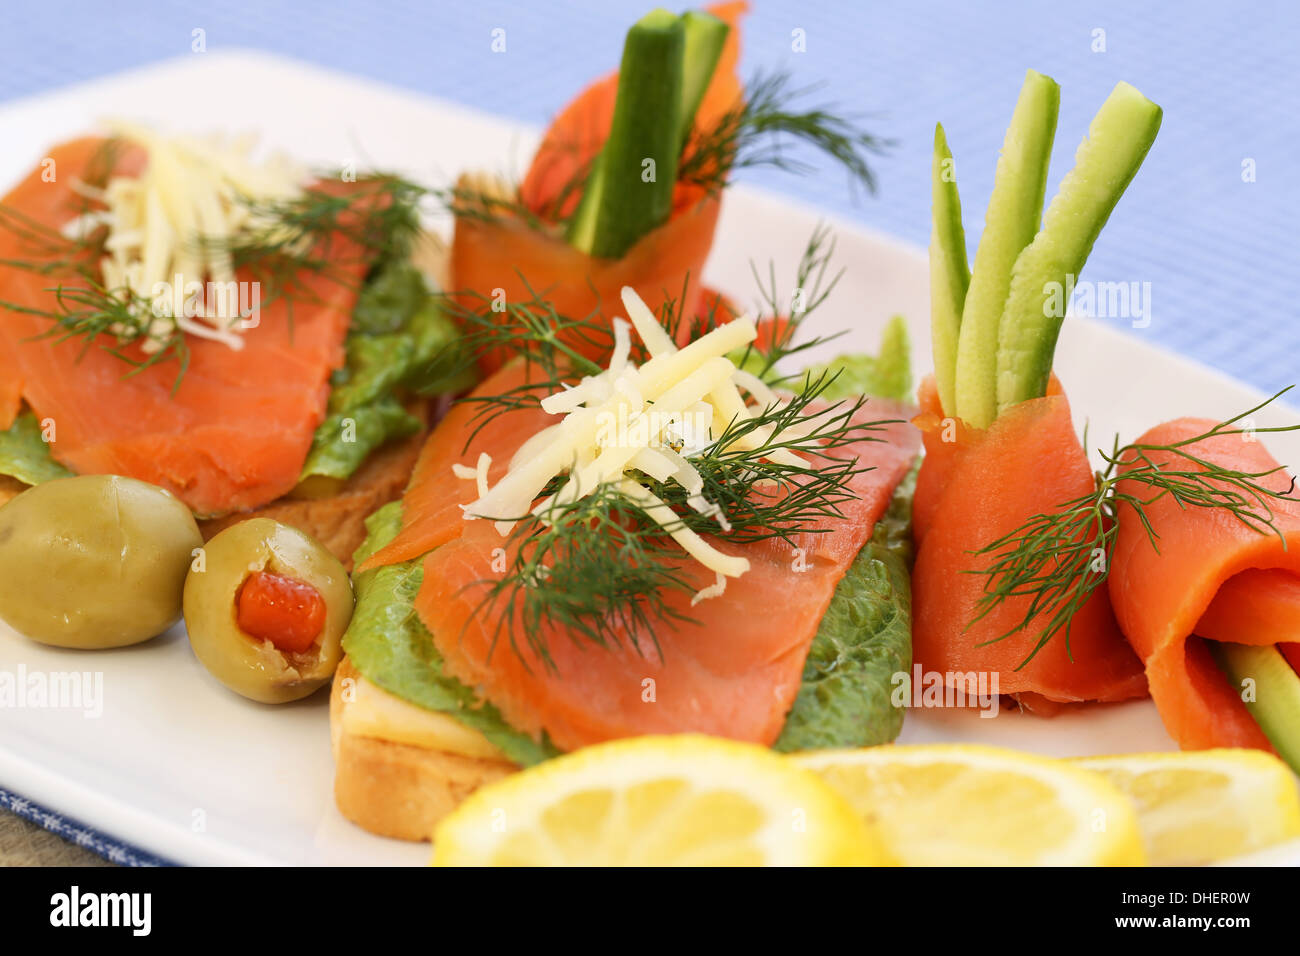 Sandwiches au saumon, fromage, laitue, les herbes sur la plaque, les olives et les citrons. Banque D'Images